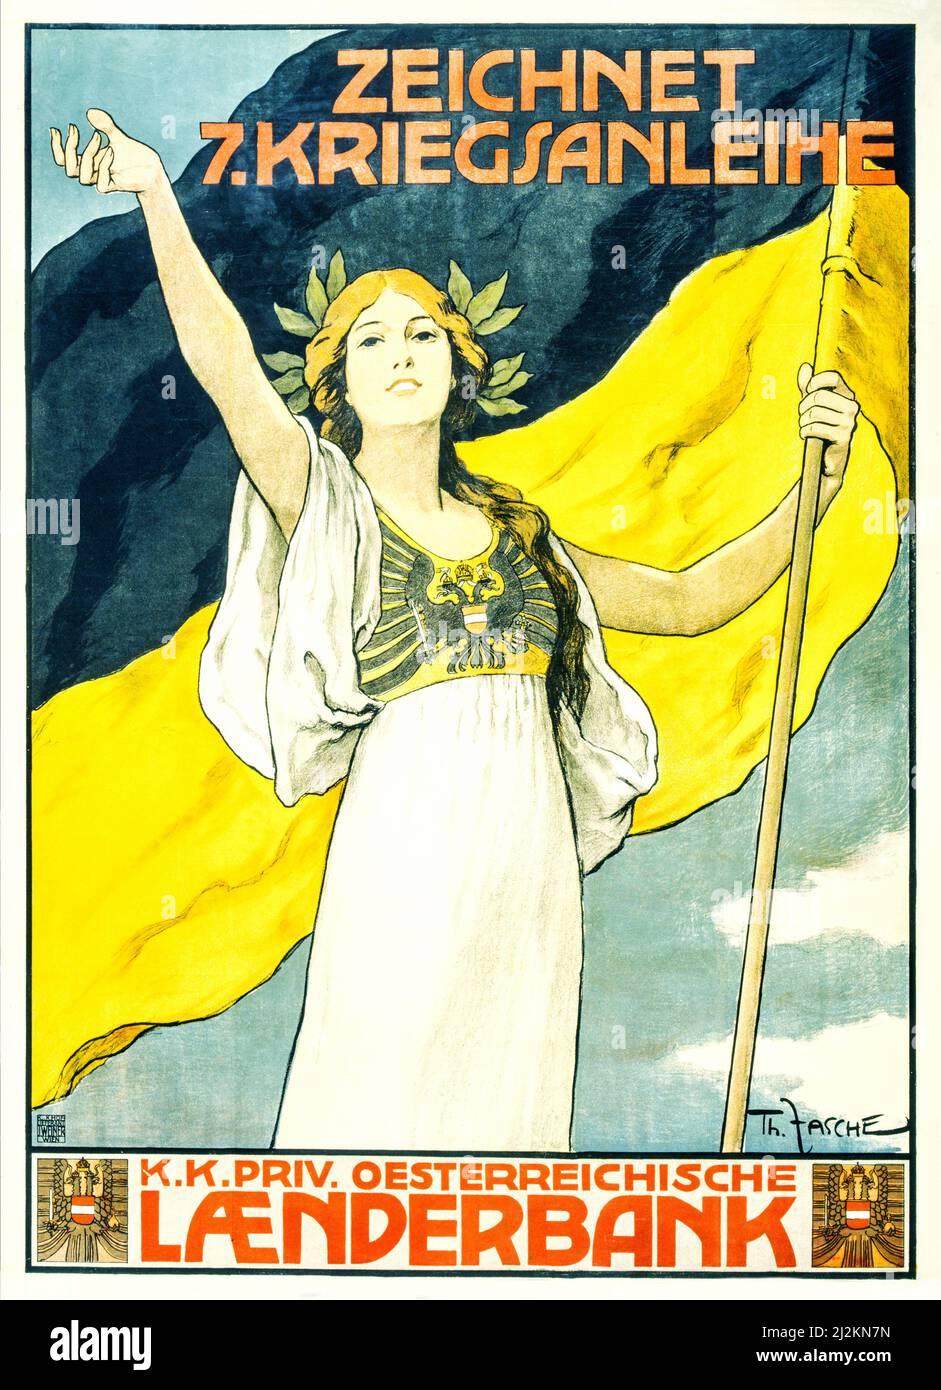 Ein österreichisch-ungarisches Werbeplakat aus dem ersten Weltkrieg aus dem 20.. Jahrhundert, 1914-1918, das die österreichisch-ungarische Monarchie darstellt und eine Flagge hält.Text kündigt die siebte Kriegsanleihe an. Der Künstler war Thomas Fasche. Stockfoto